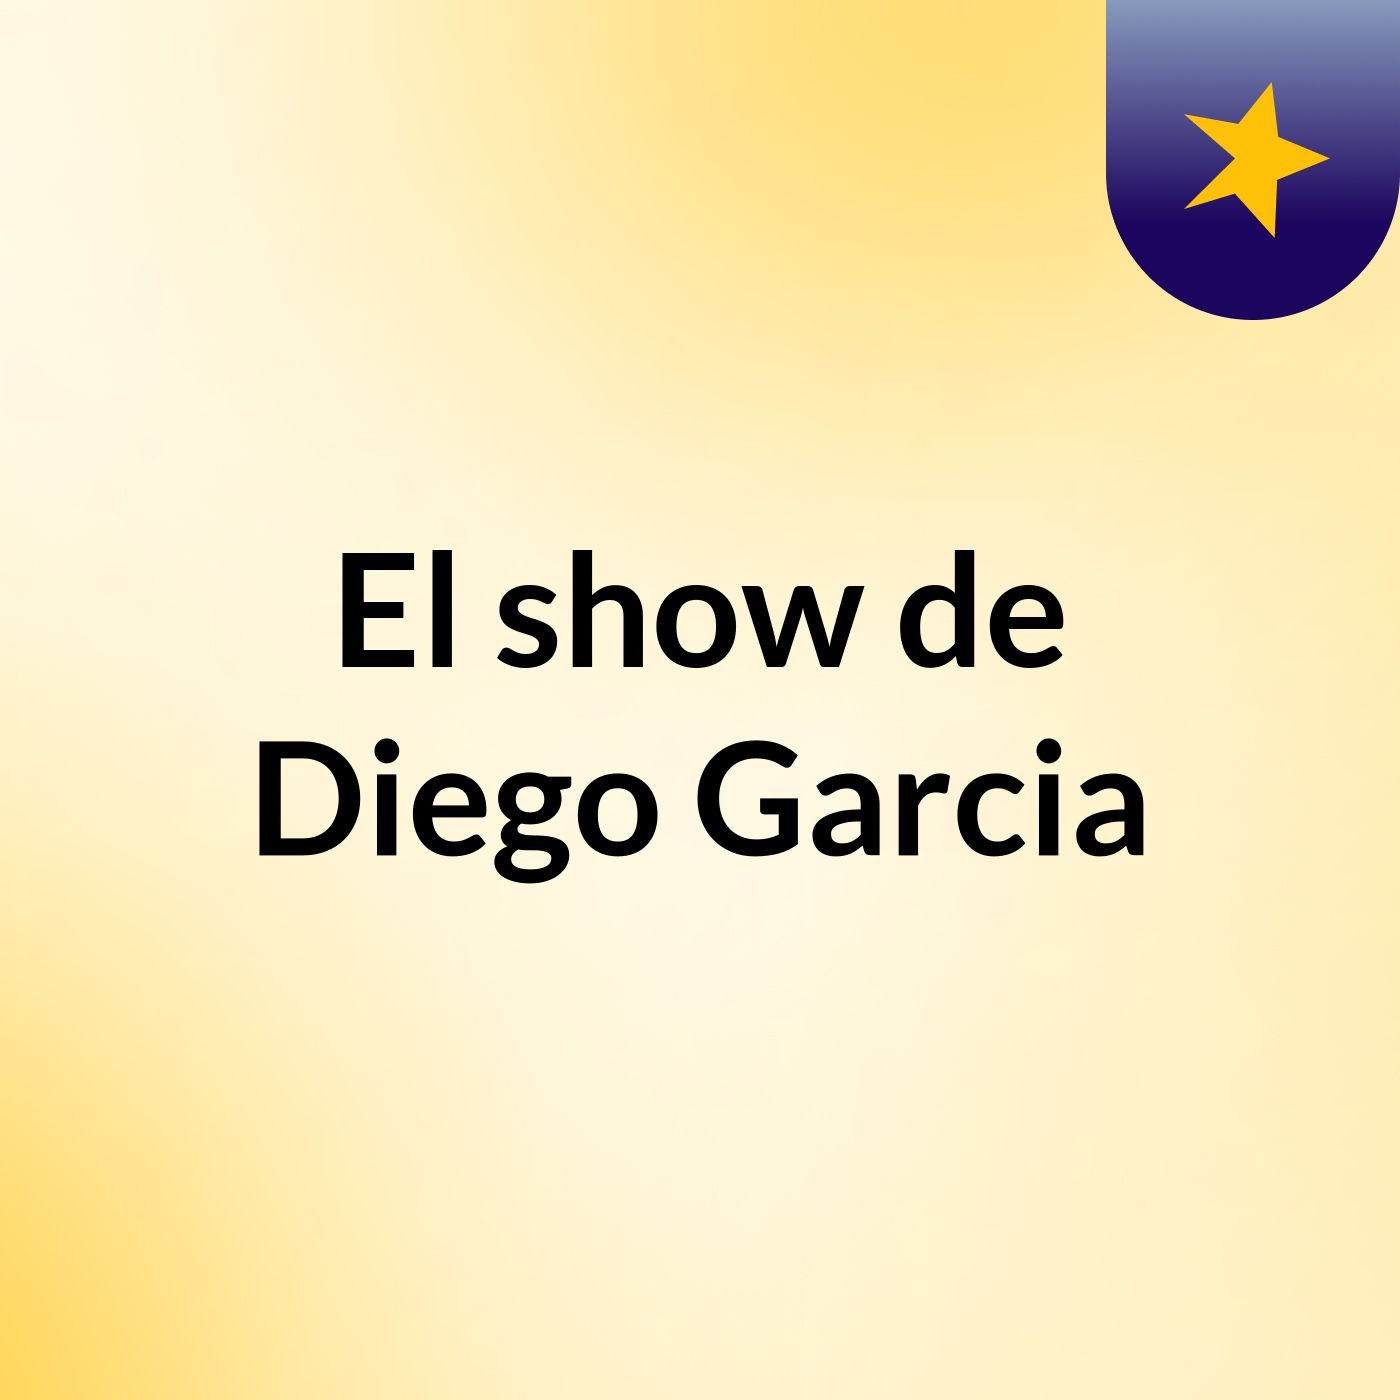 El show de Diego Garcia